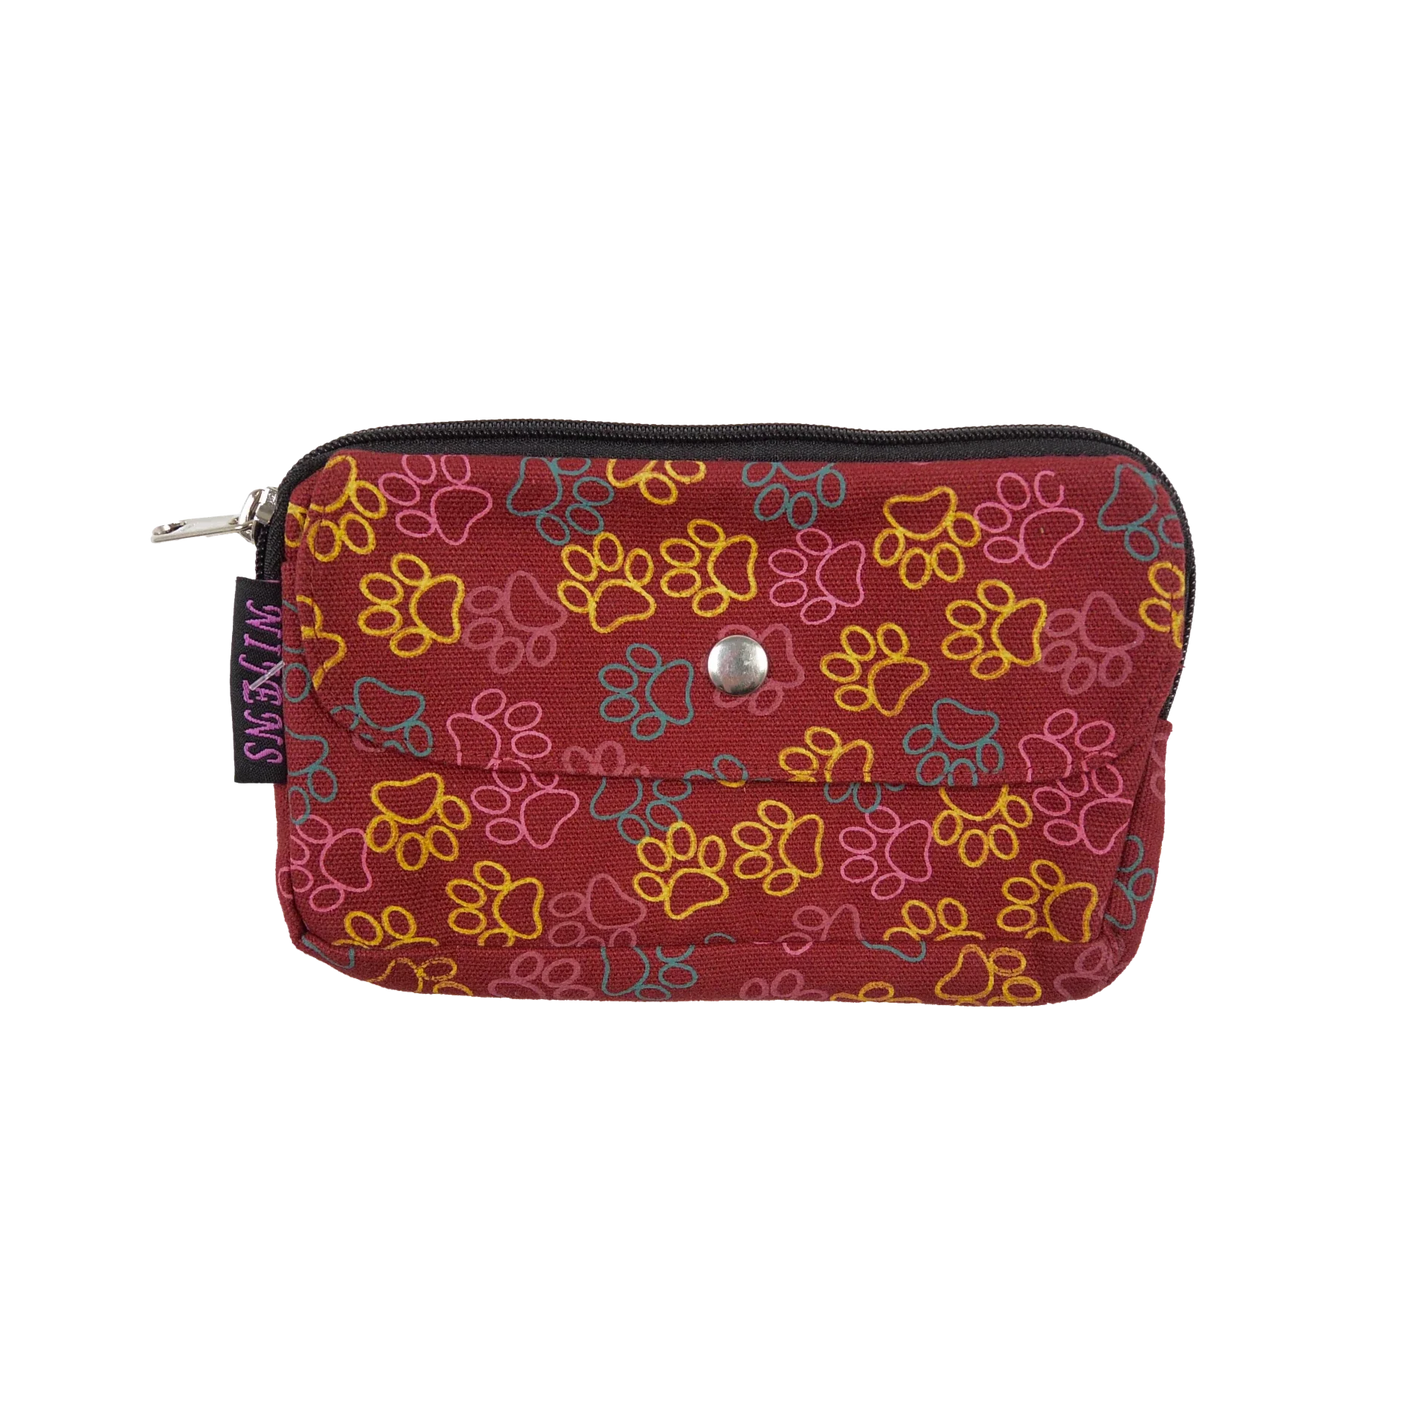 Beuteltasche aus Canvas rot mit Pfotenmotiven. Die Tasche besitzt Reisverschlussfächer und ein Einsteckfach vorne.